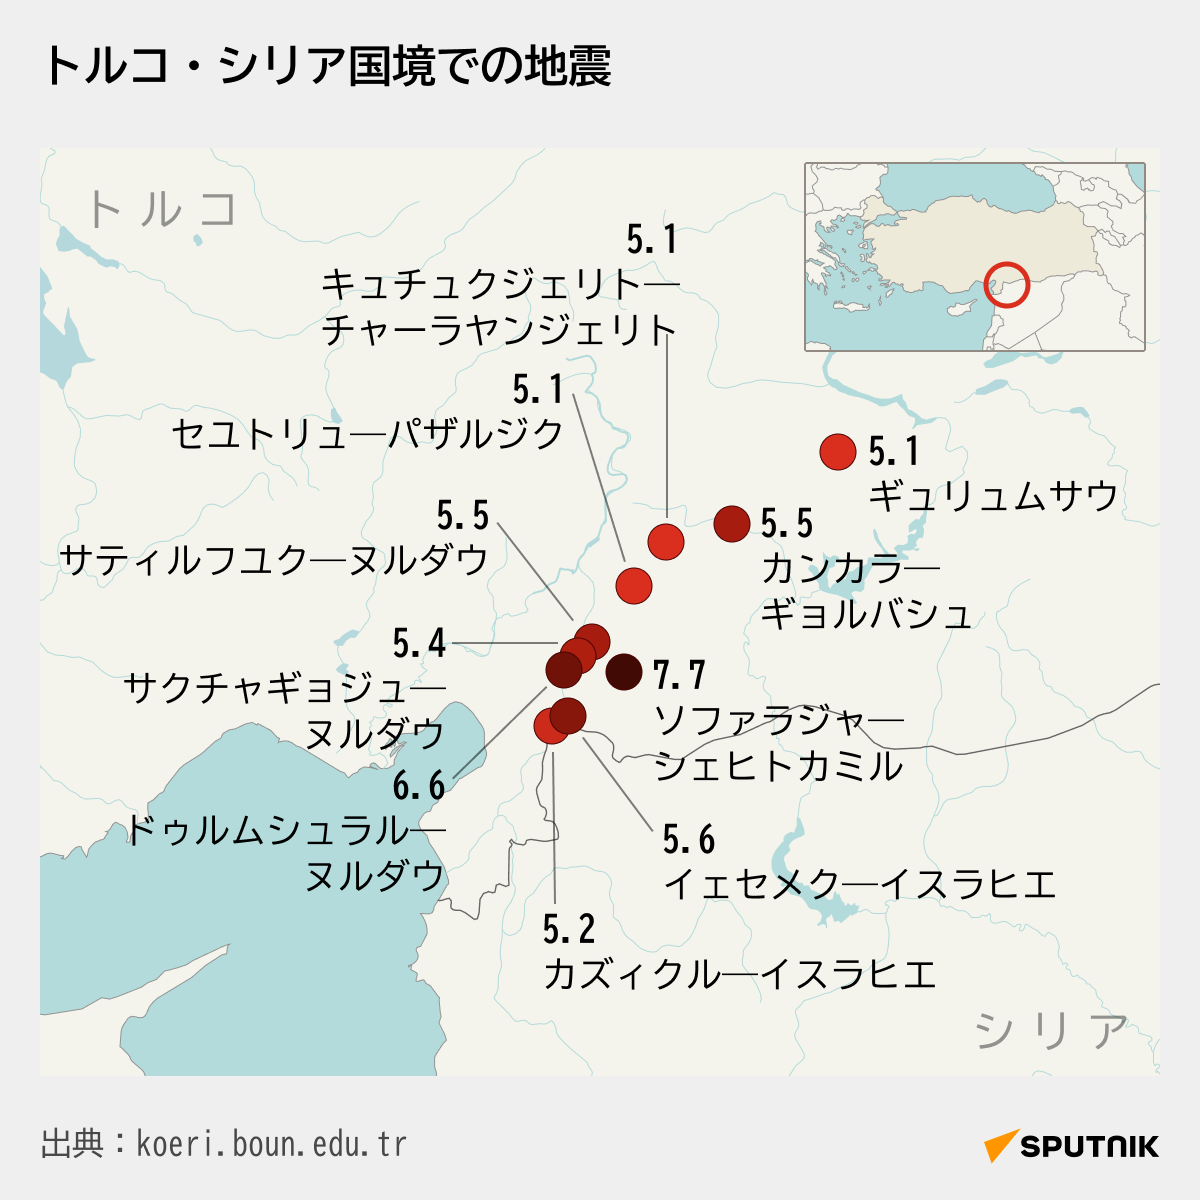 トルコ・シリア国境での地震 - Sputnik 日本